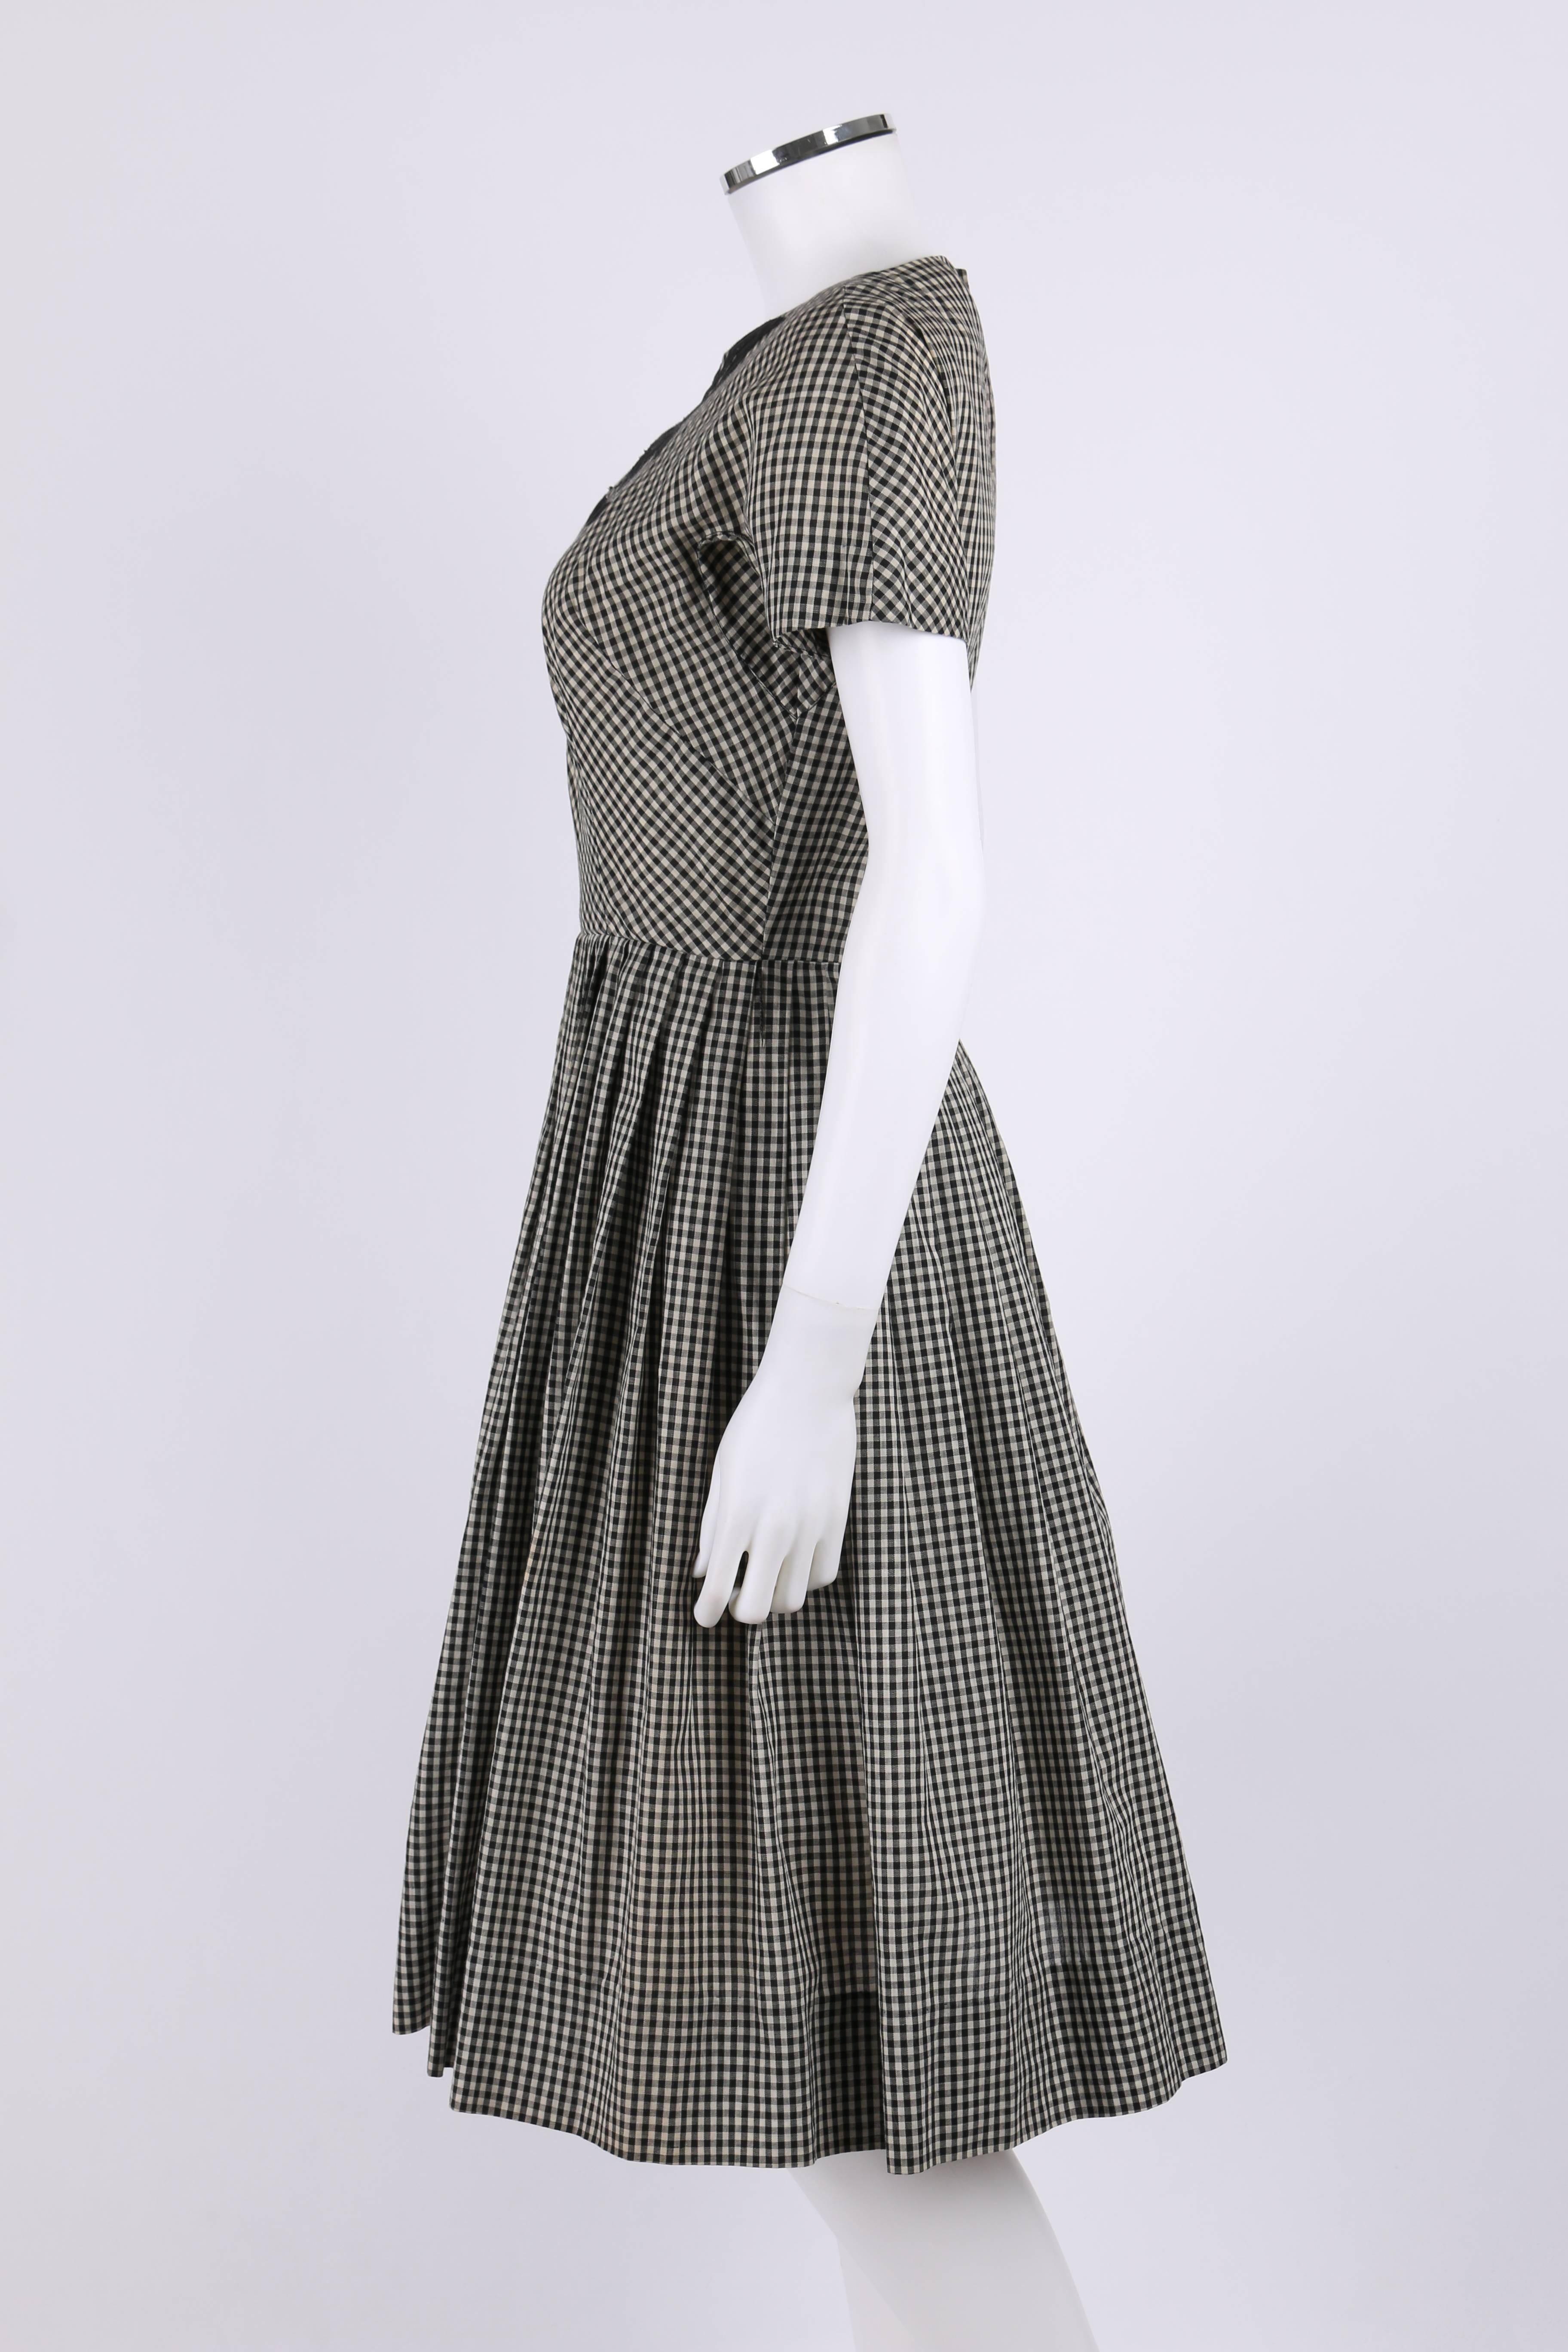 Women's JEANNE DURRELL c.1950's Black White Gingham Avant Garde Applique Day Dress